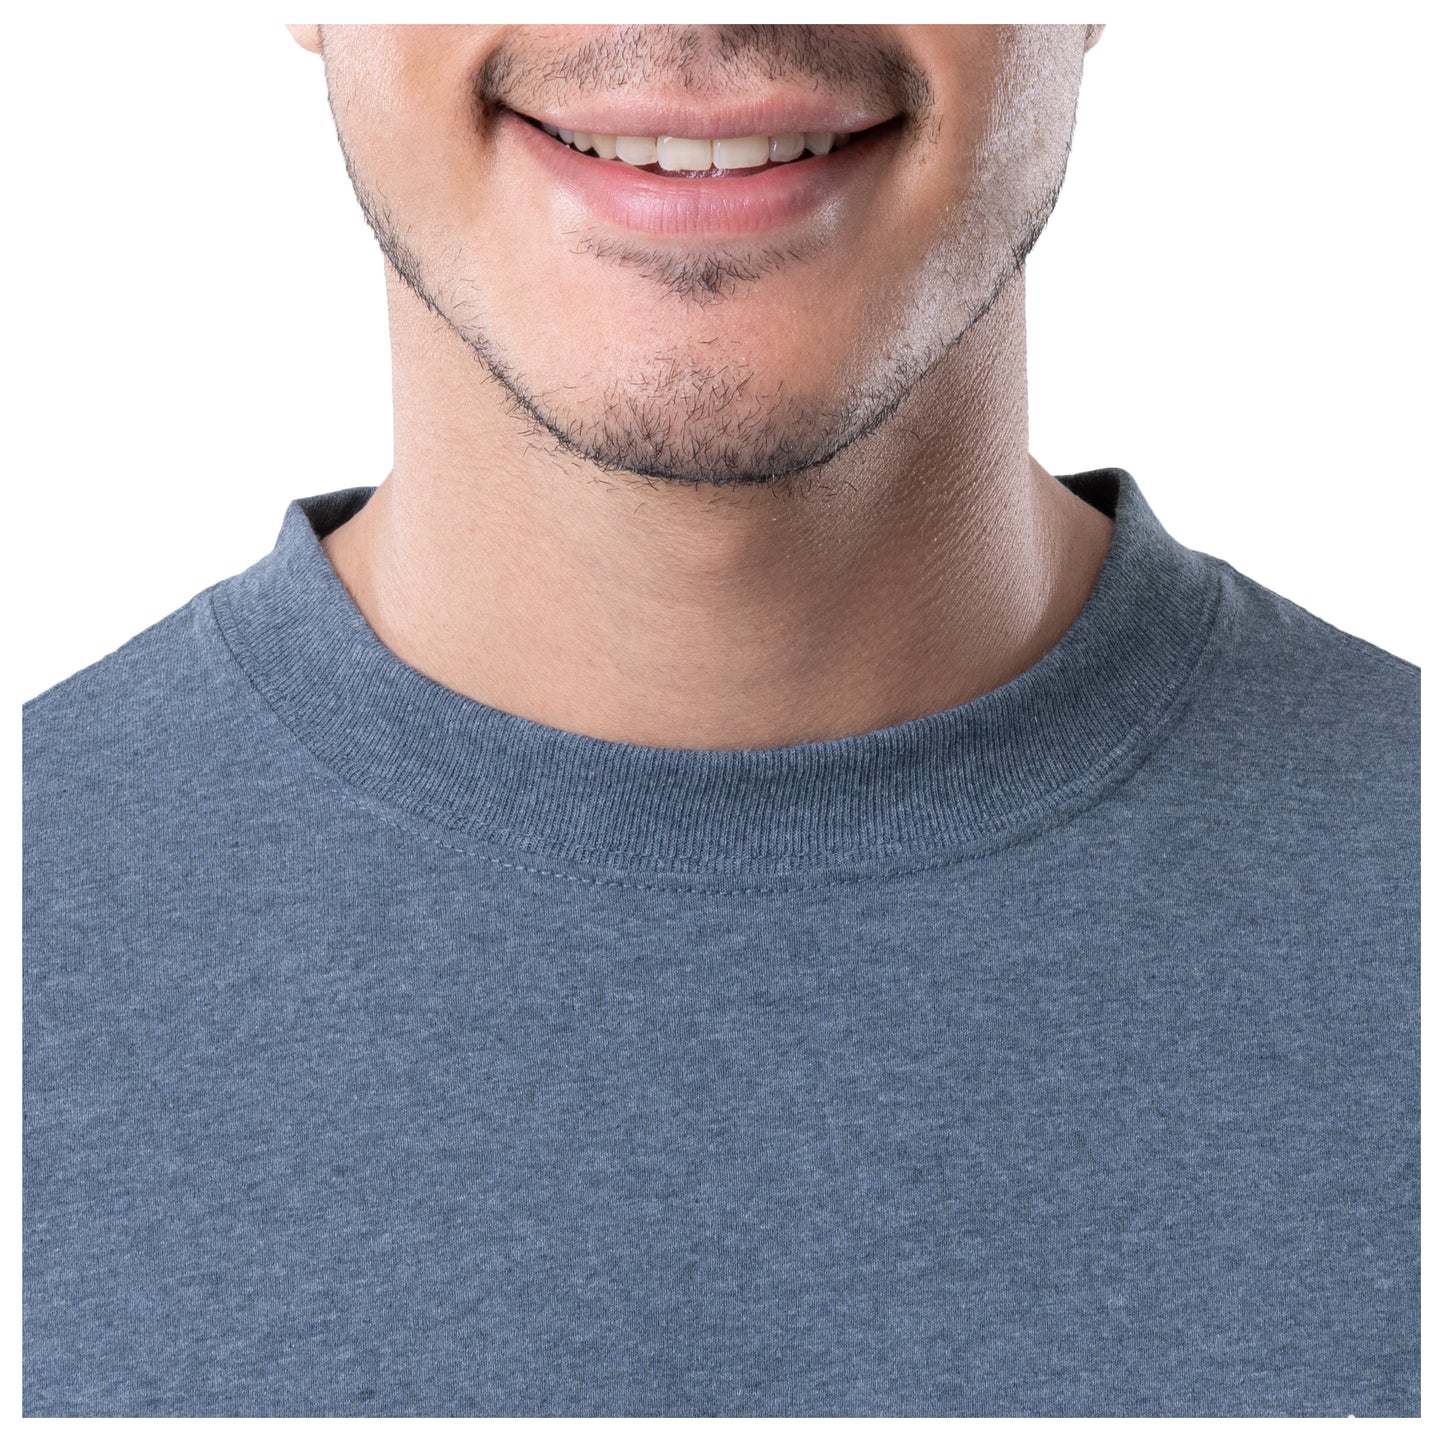 Men's Grand Slam Threadcycled Short Sleeve T-Shirt